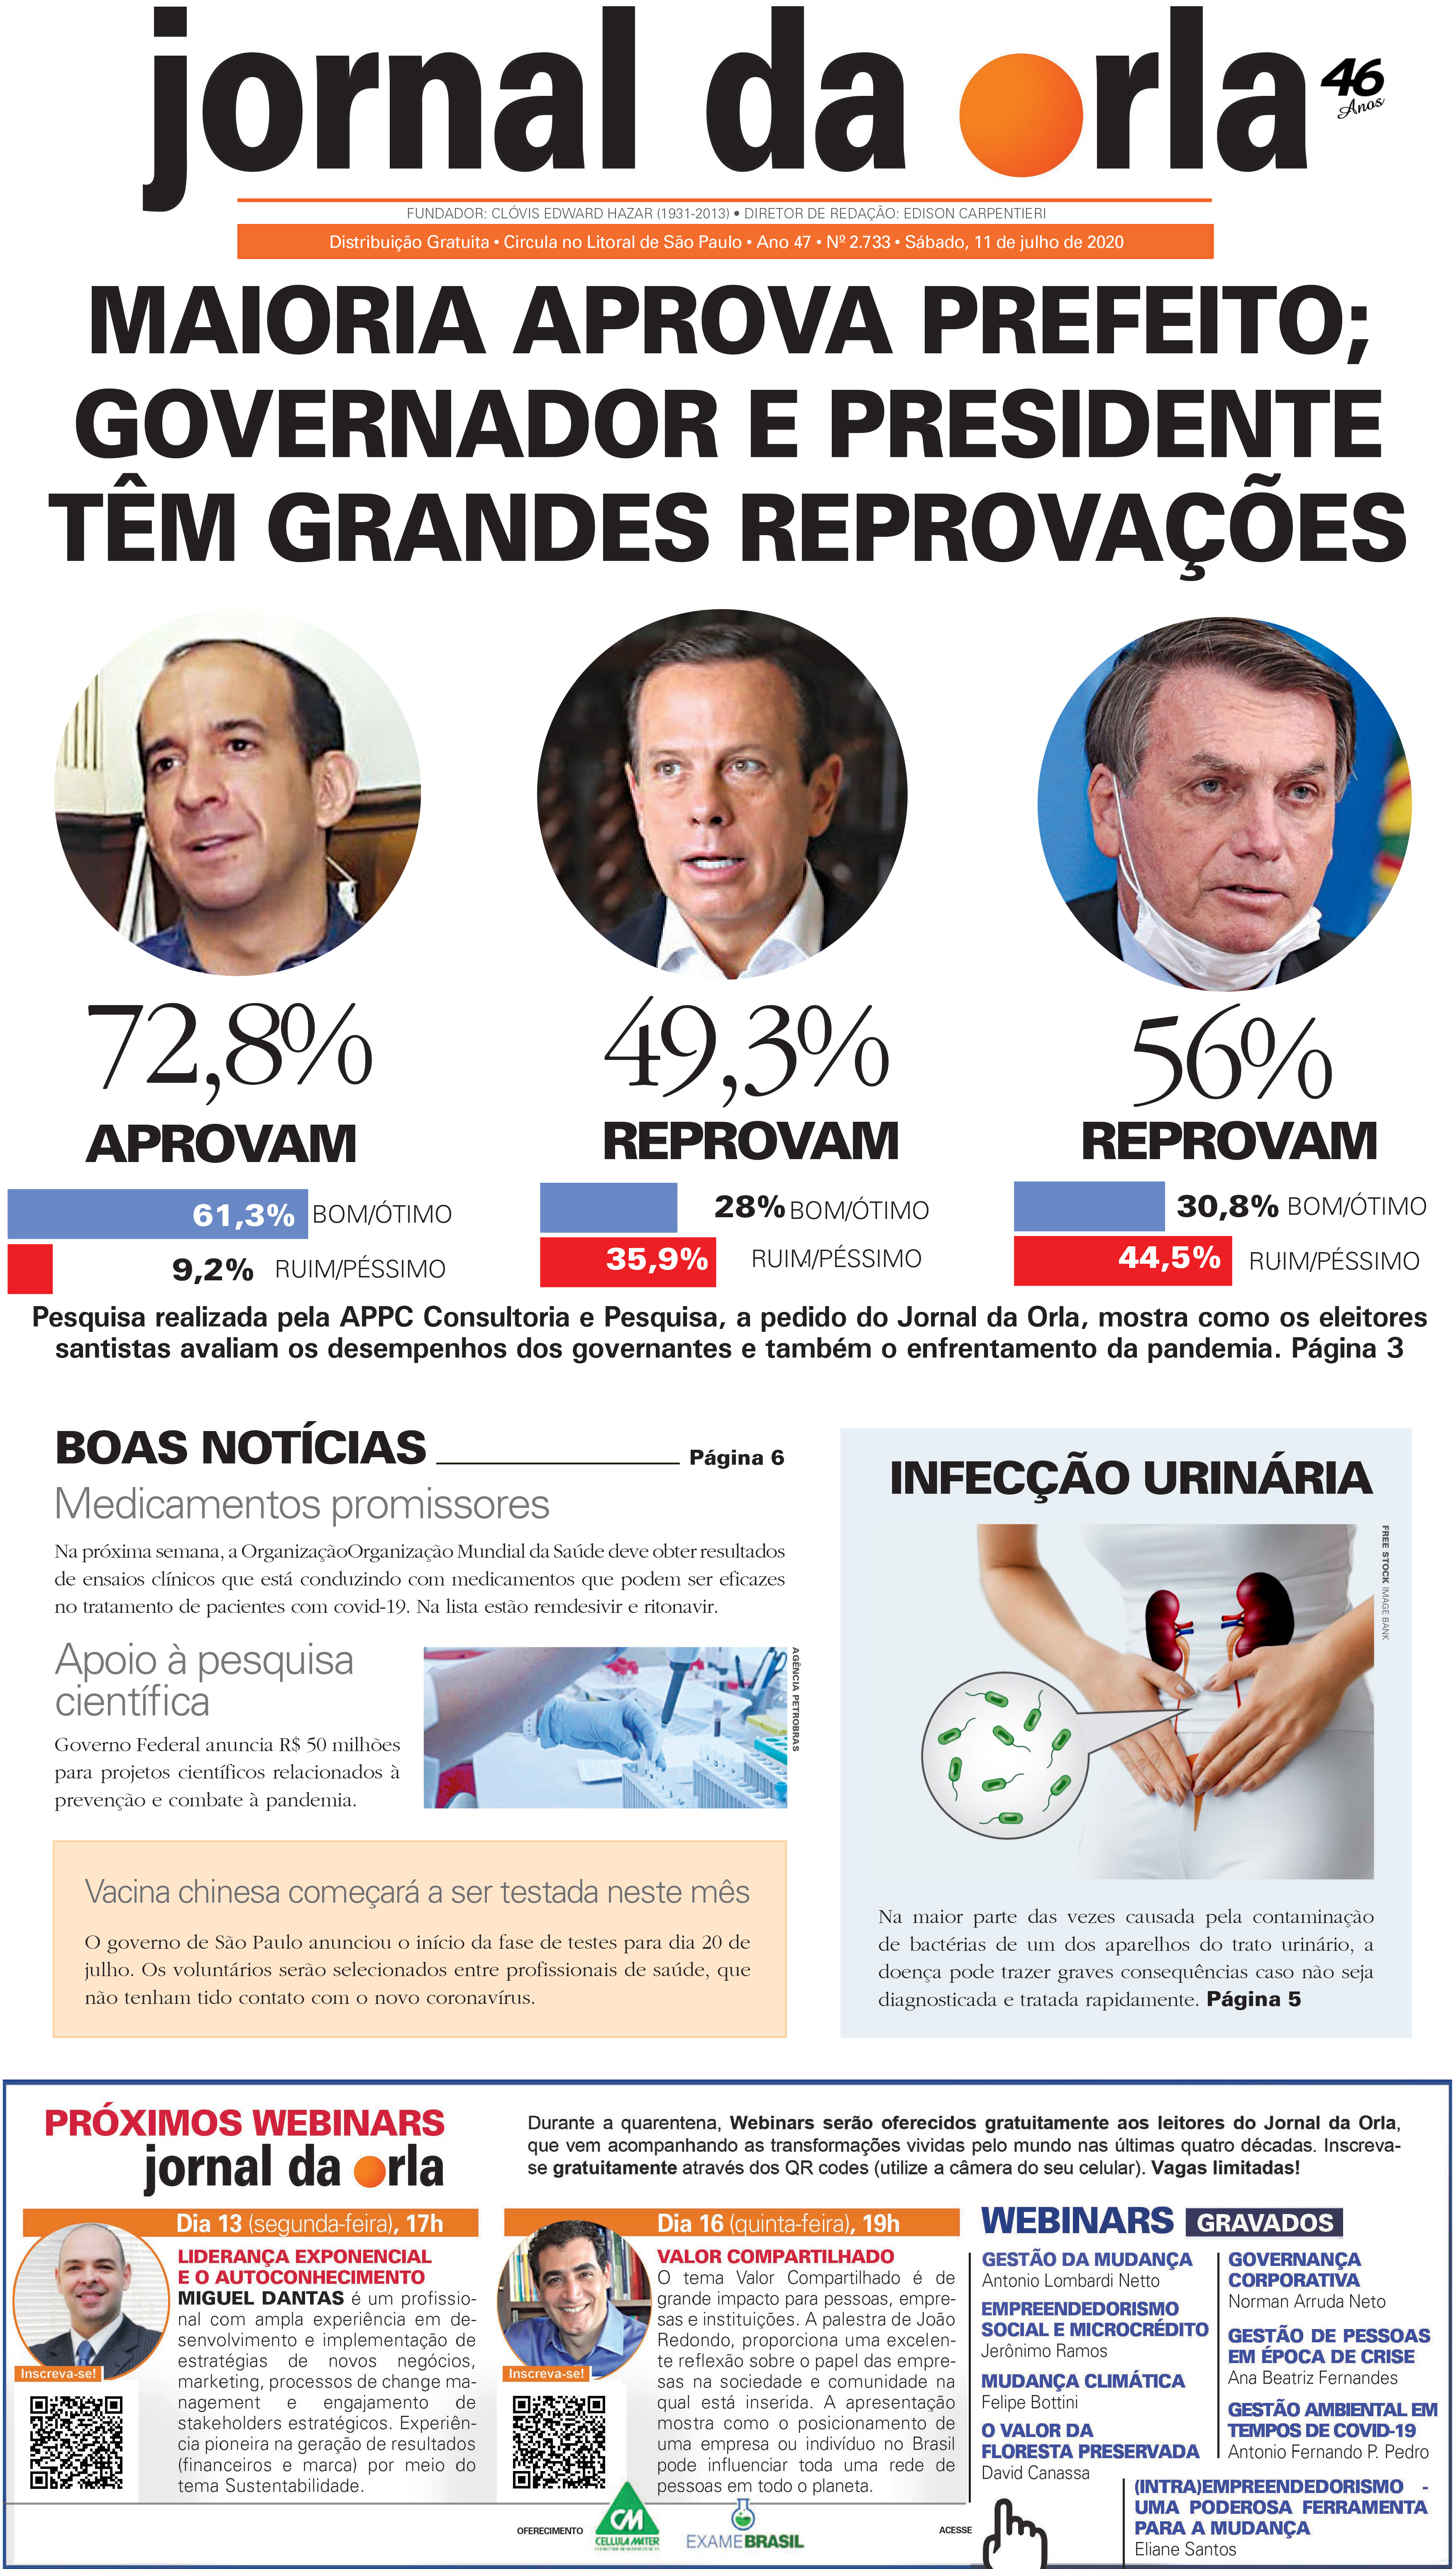 11/07/2020 | Jornal da Orla